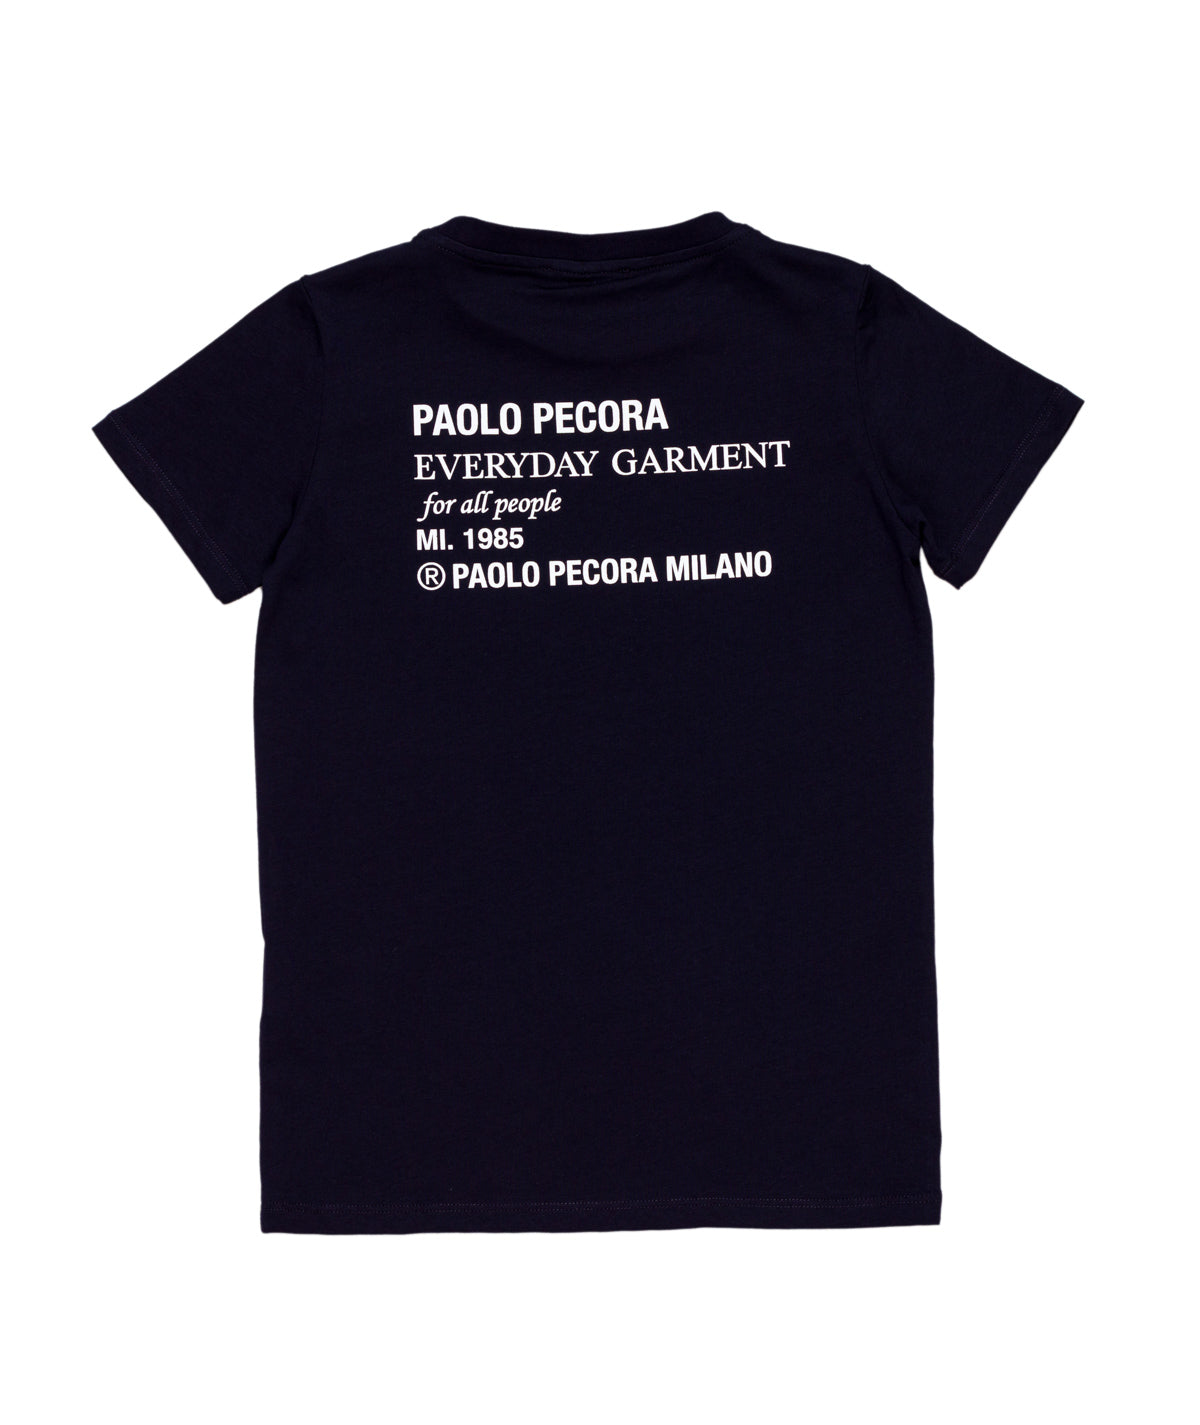 Paolo Pecora t-shirt